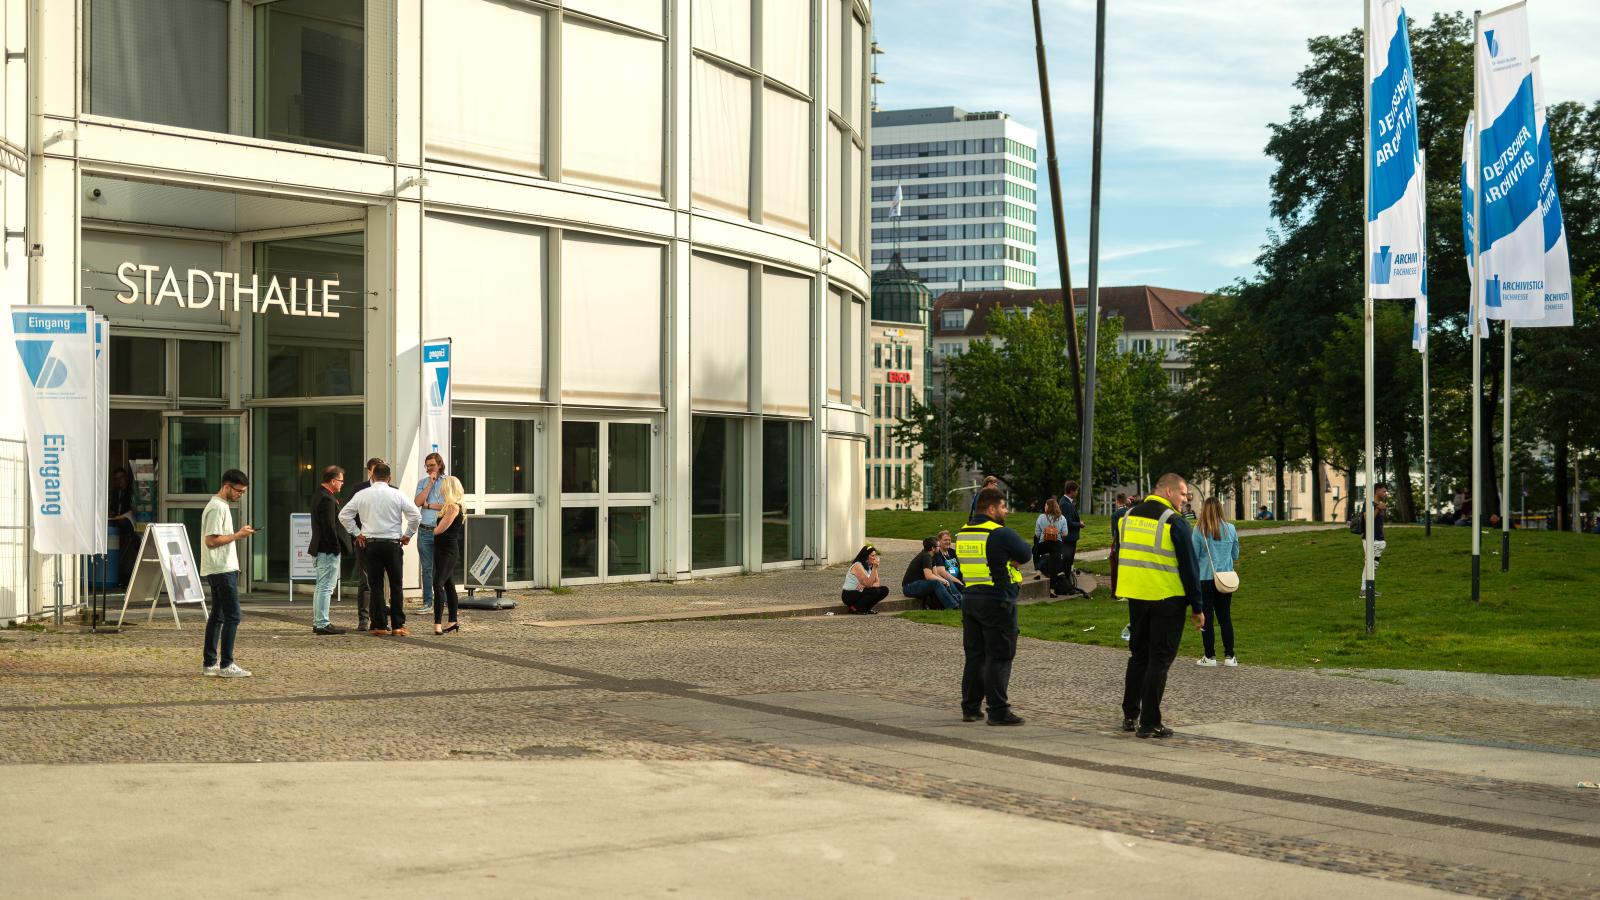 Ein Blick von Außen auf die Stadthalle Bielefeld, mit den Fahnen des deutschen Archivtags und Besuchenden vor dem Gebäude